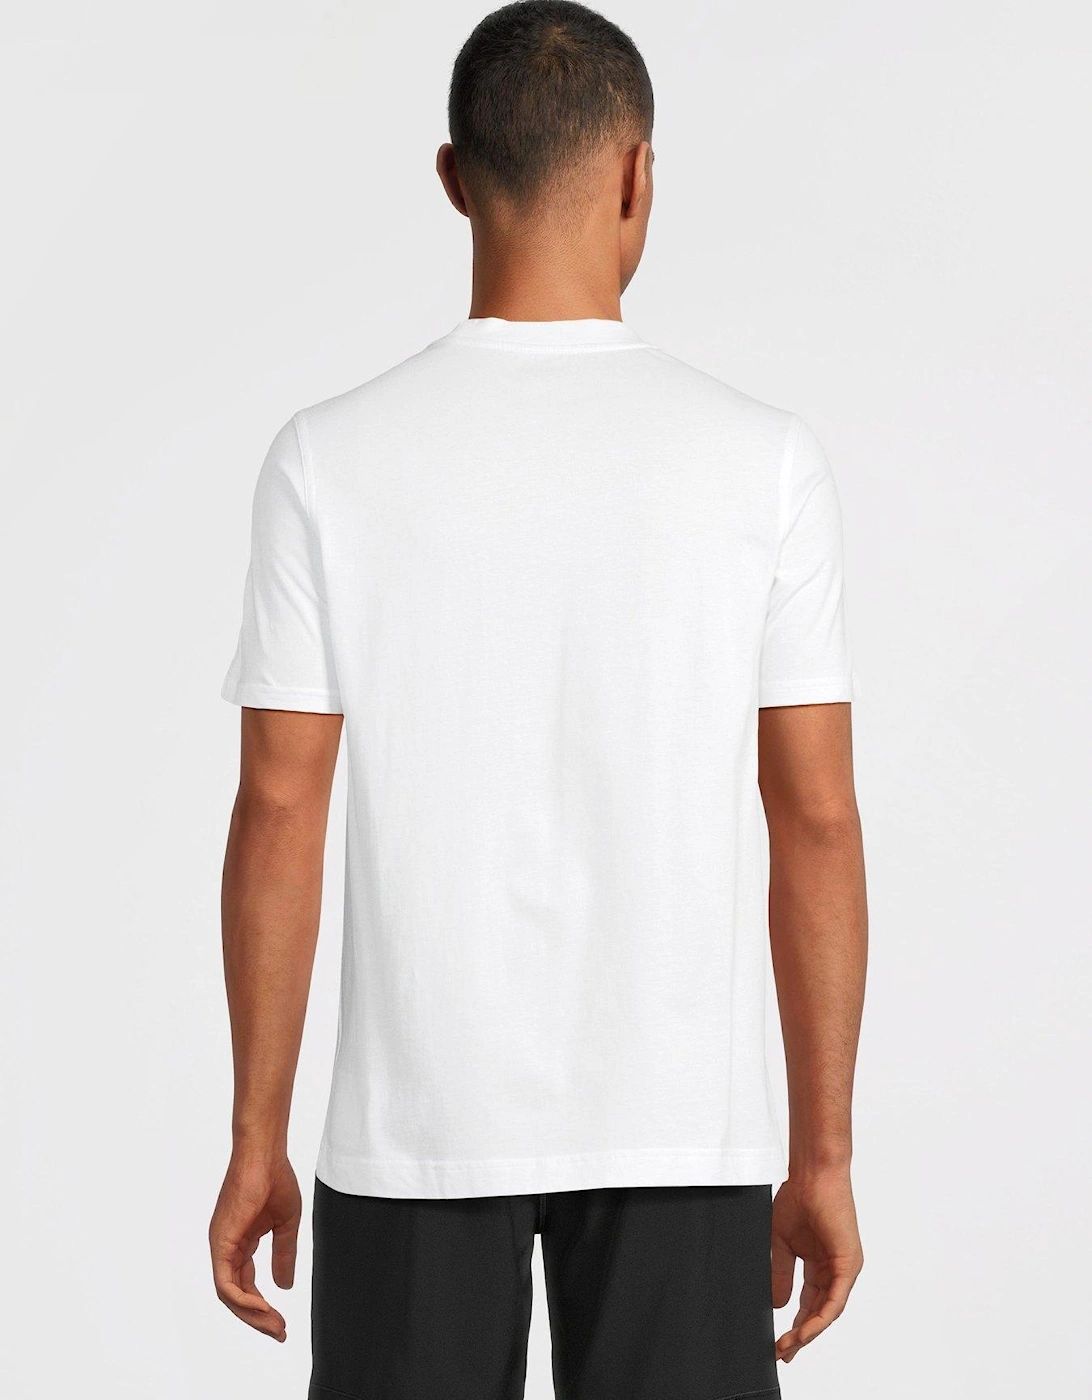 CK Sport Tape Logo Short Sleeve T-shirt - White